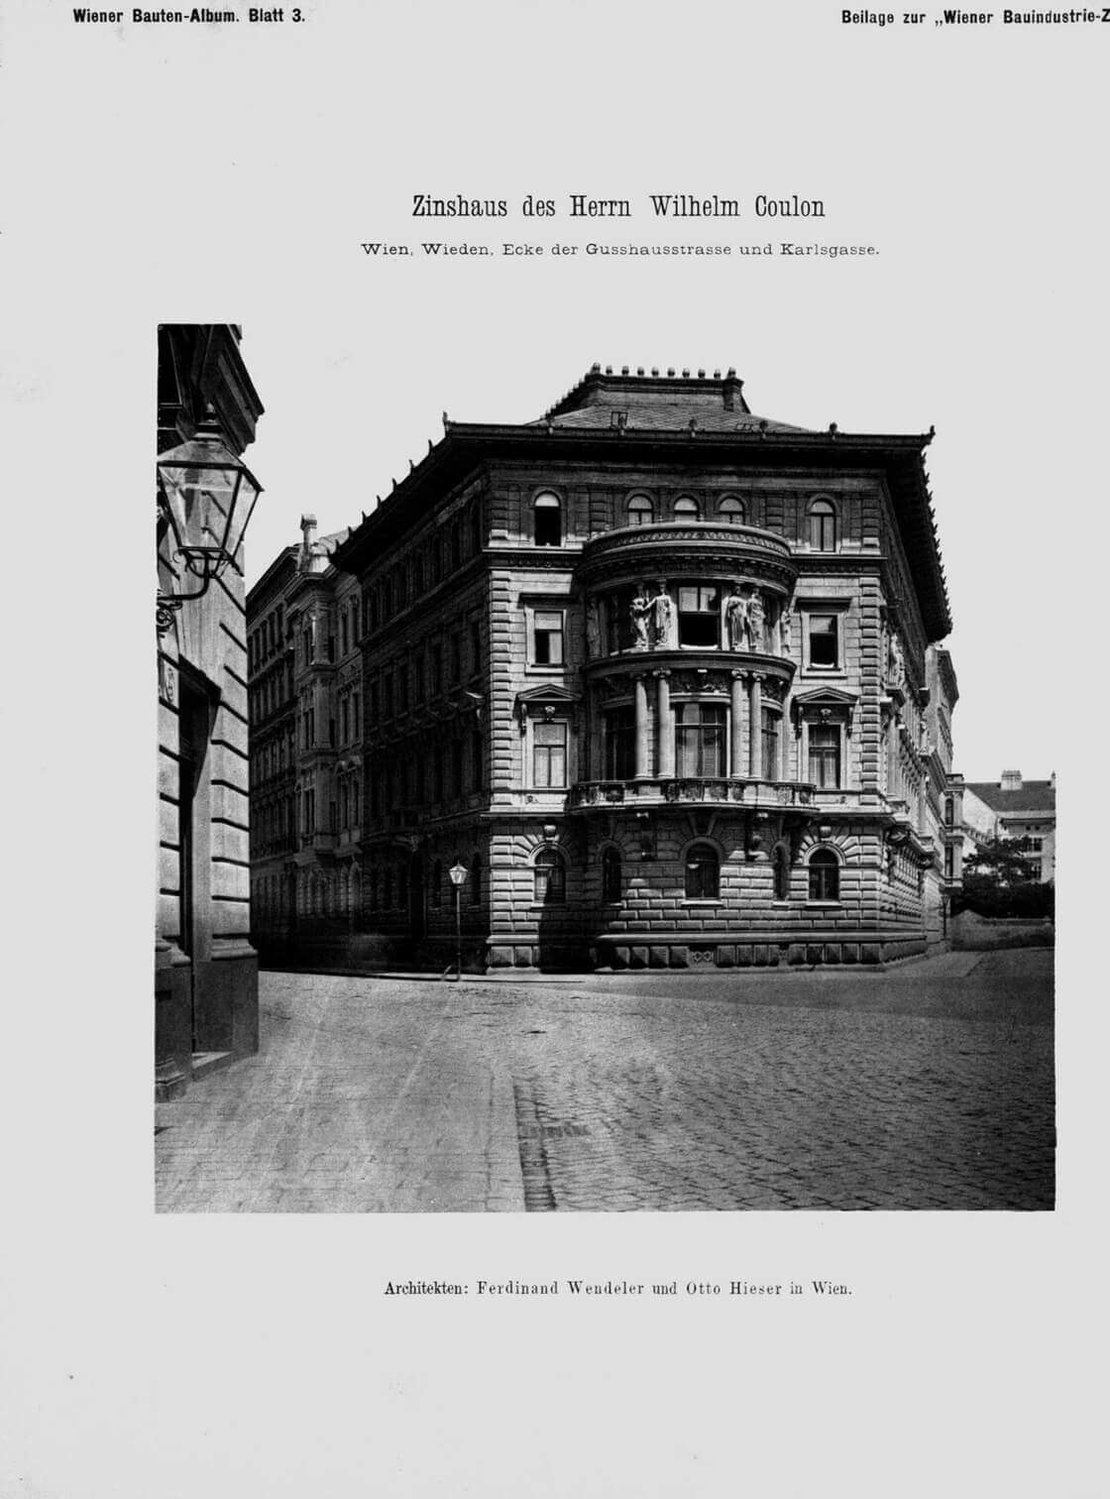 Das Zinshaus von Wilhelm Coulon in der Gußhausstraße 10 im vierten Bezirk, Foto: Beilage zur Wiener Bauindustrie-Zeitung, 1883, Quelle: ANNO/ÖNB 